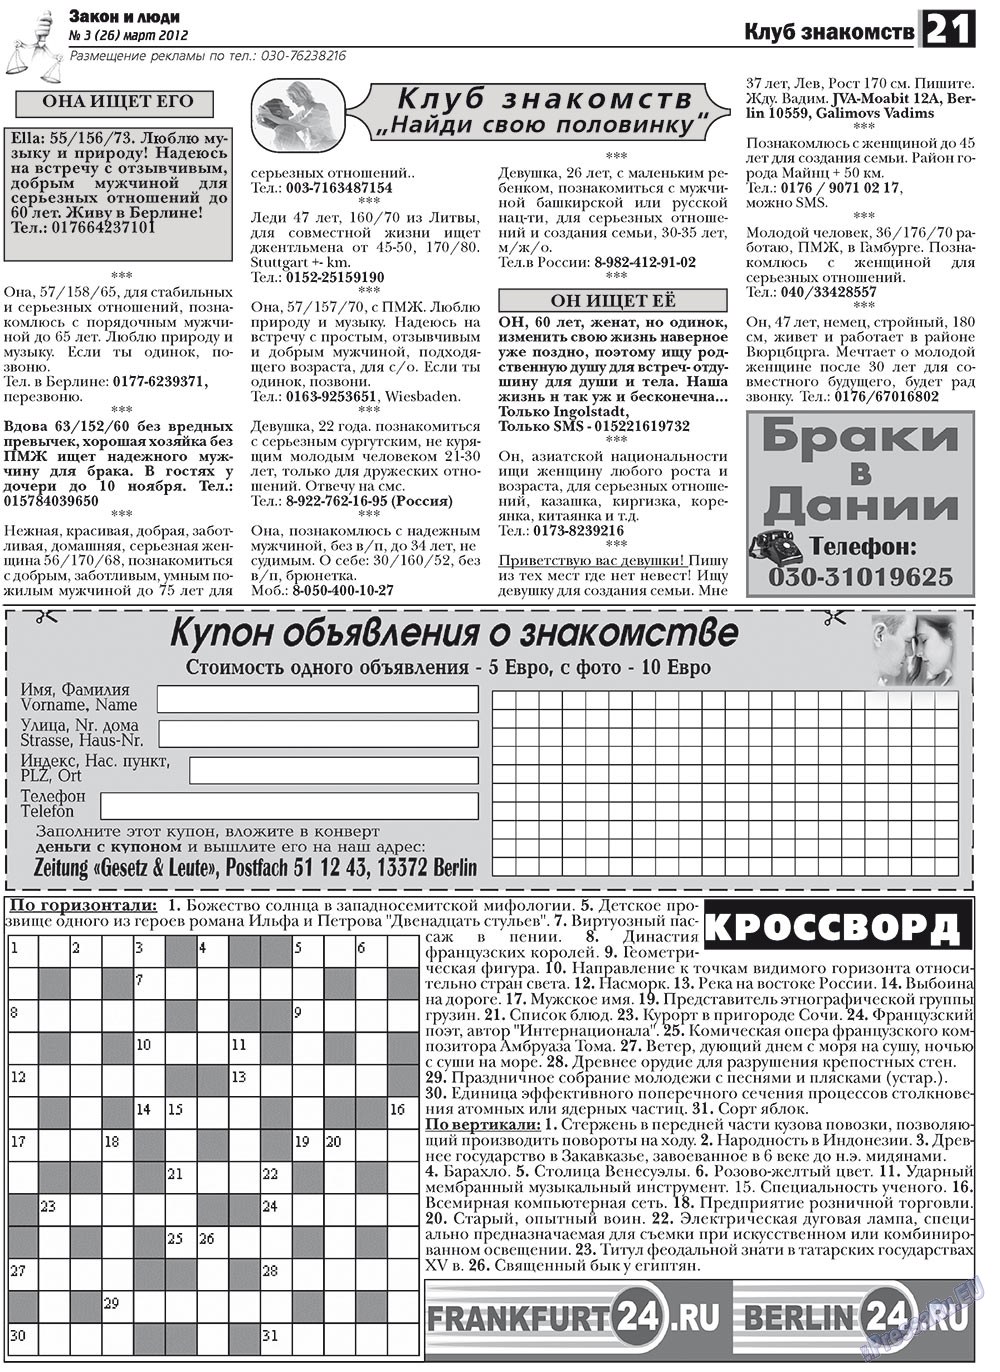 Закон и люди, газета. 2012 №3 стр.21